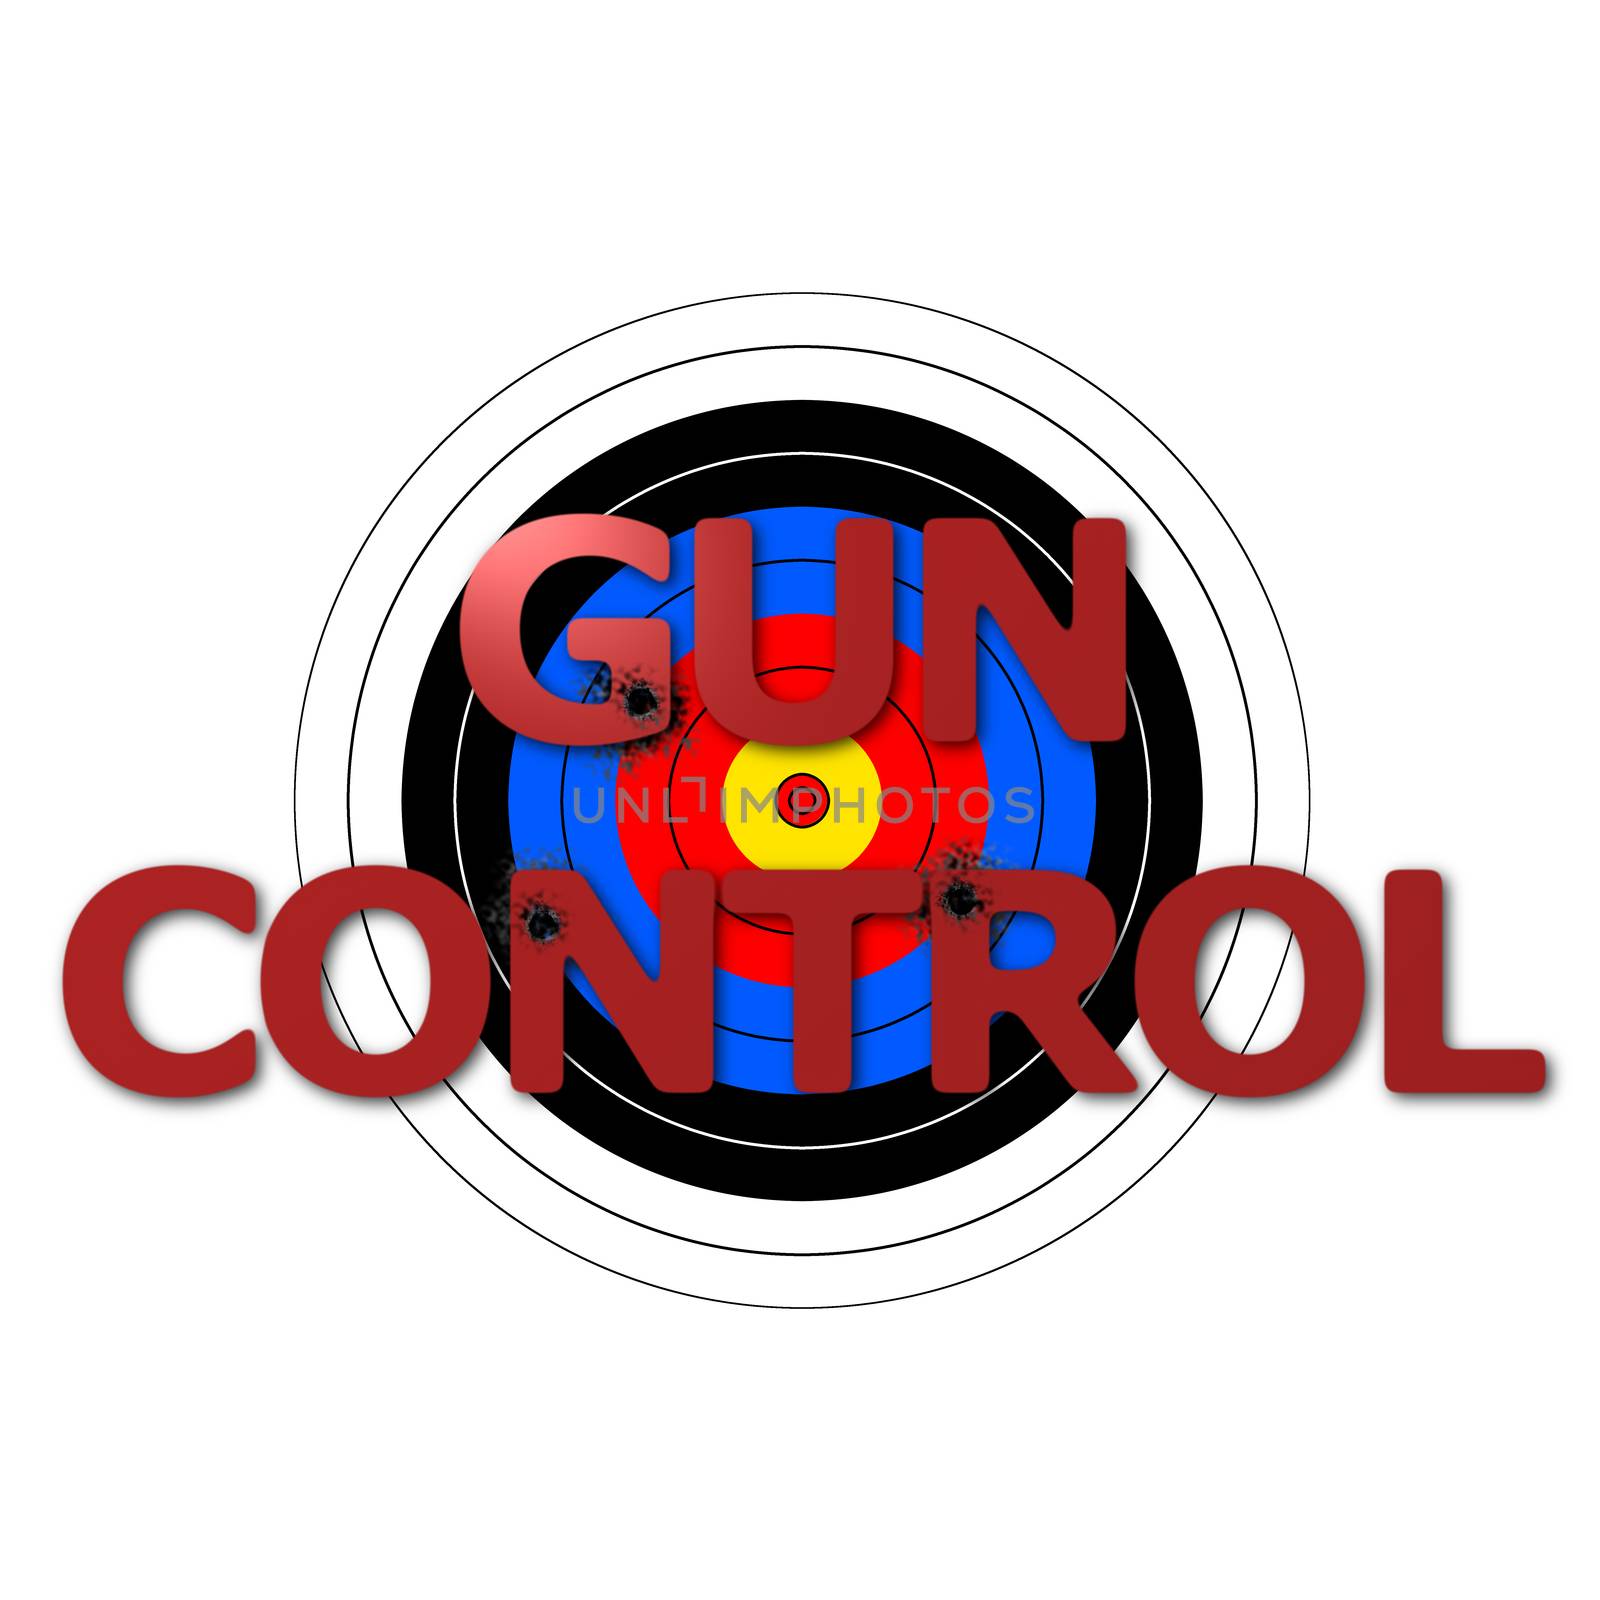 Target Gun Control by hlehnerer